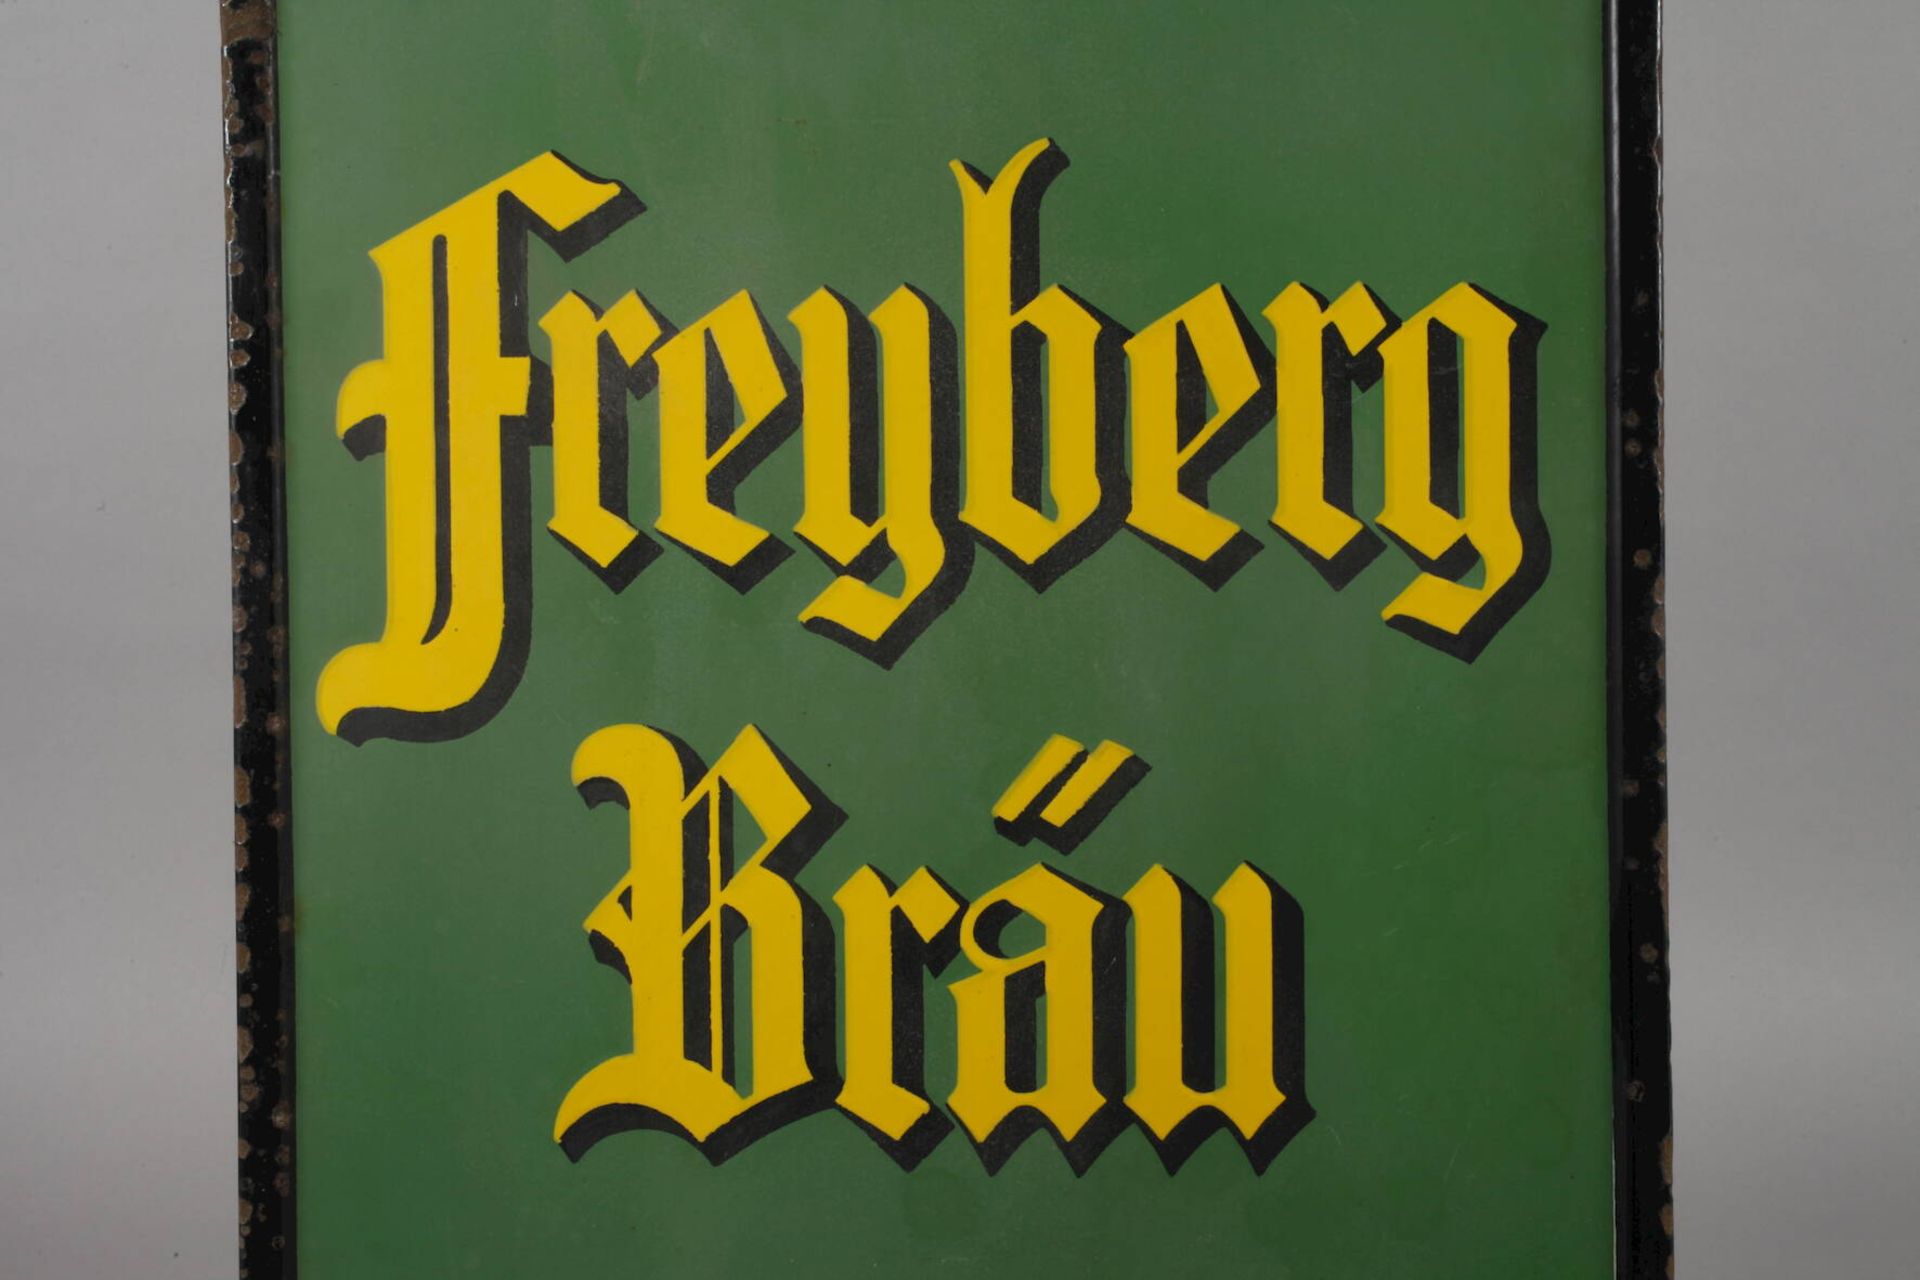 Emailleschild Freyberg Bräu - Bild 3 aus 5